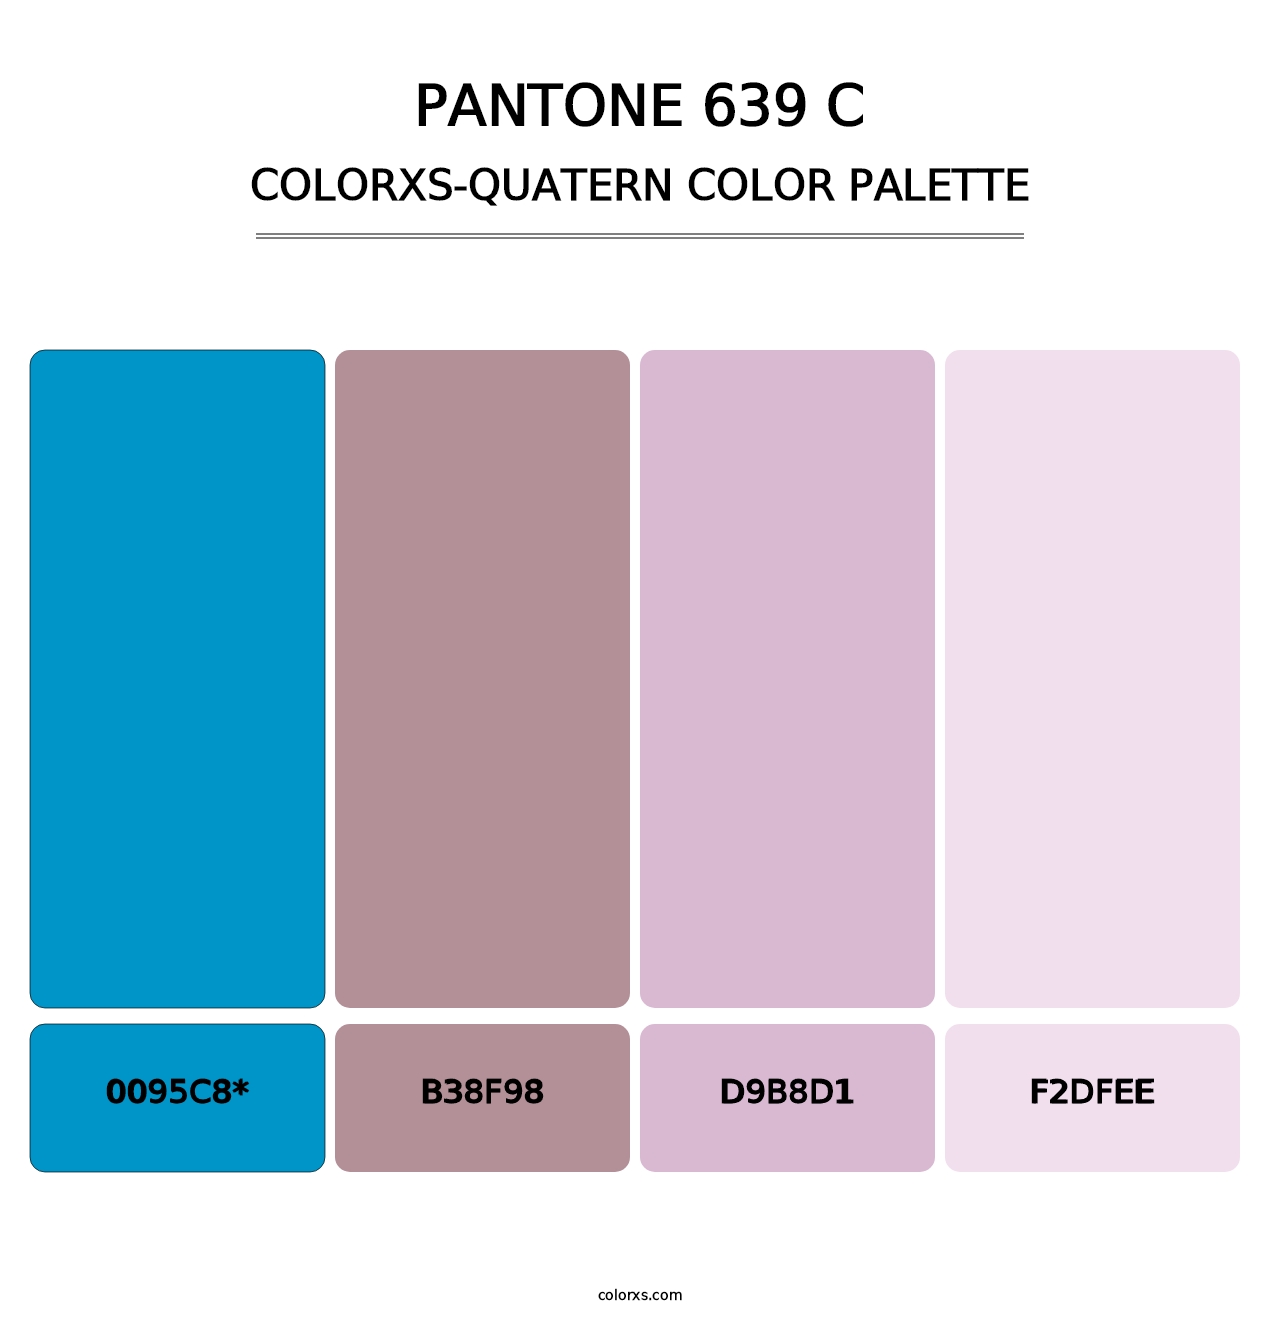 PANTONE 639 C - Colorxs Quatern Palette